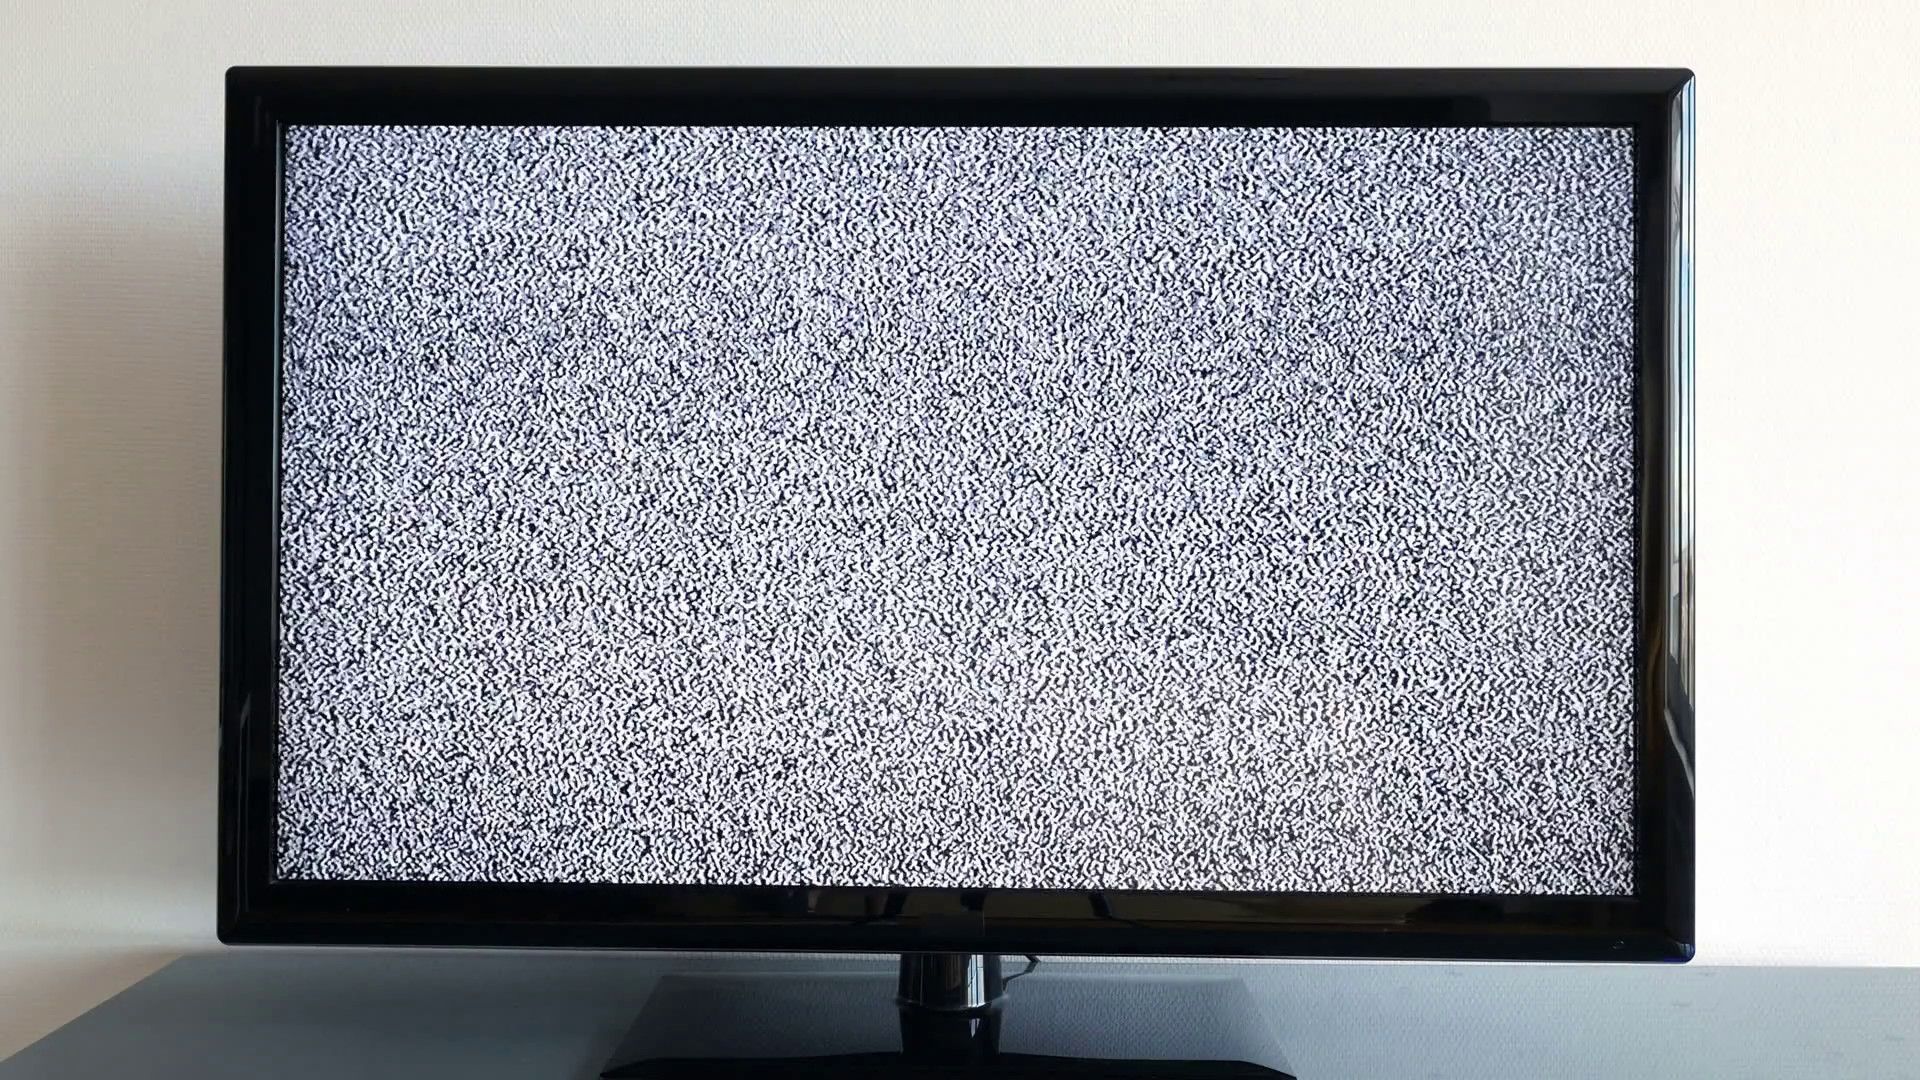 Экран телевизора без сигнала